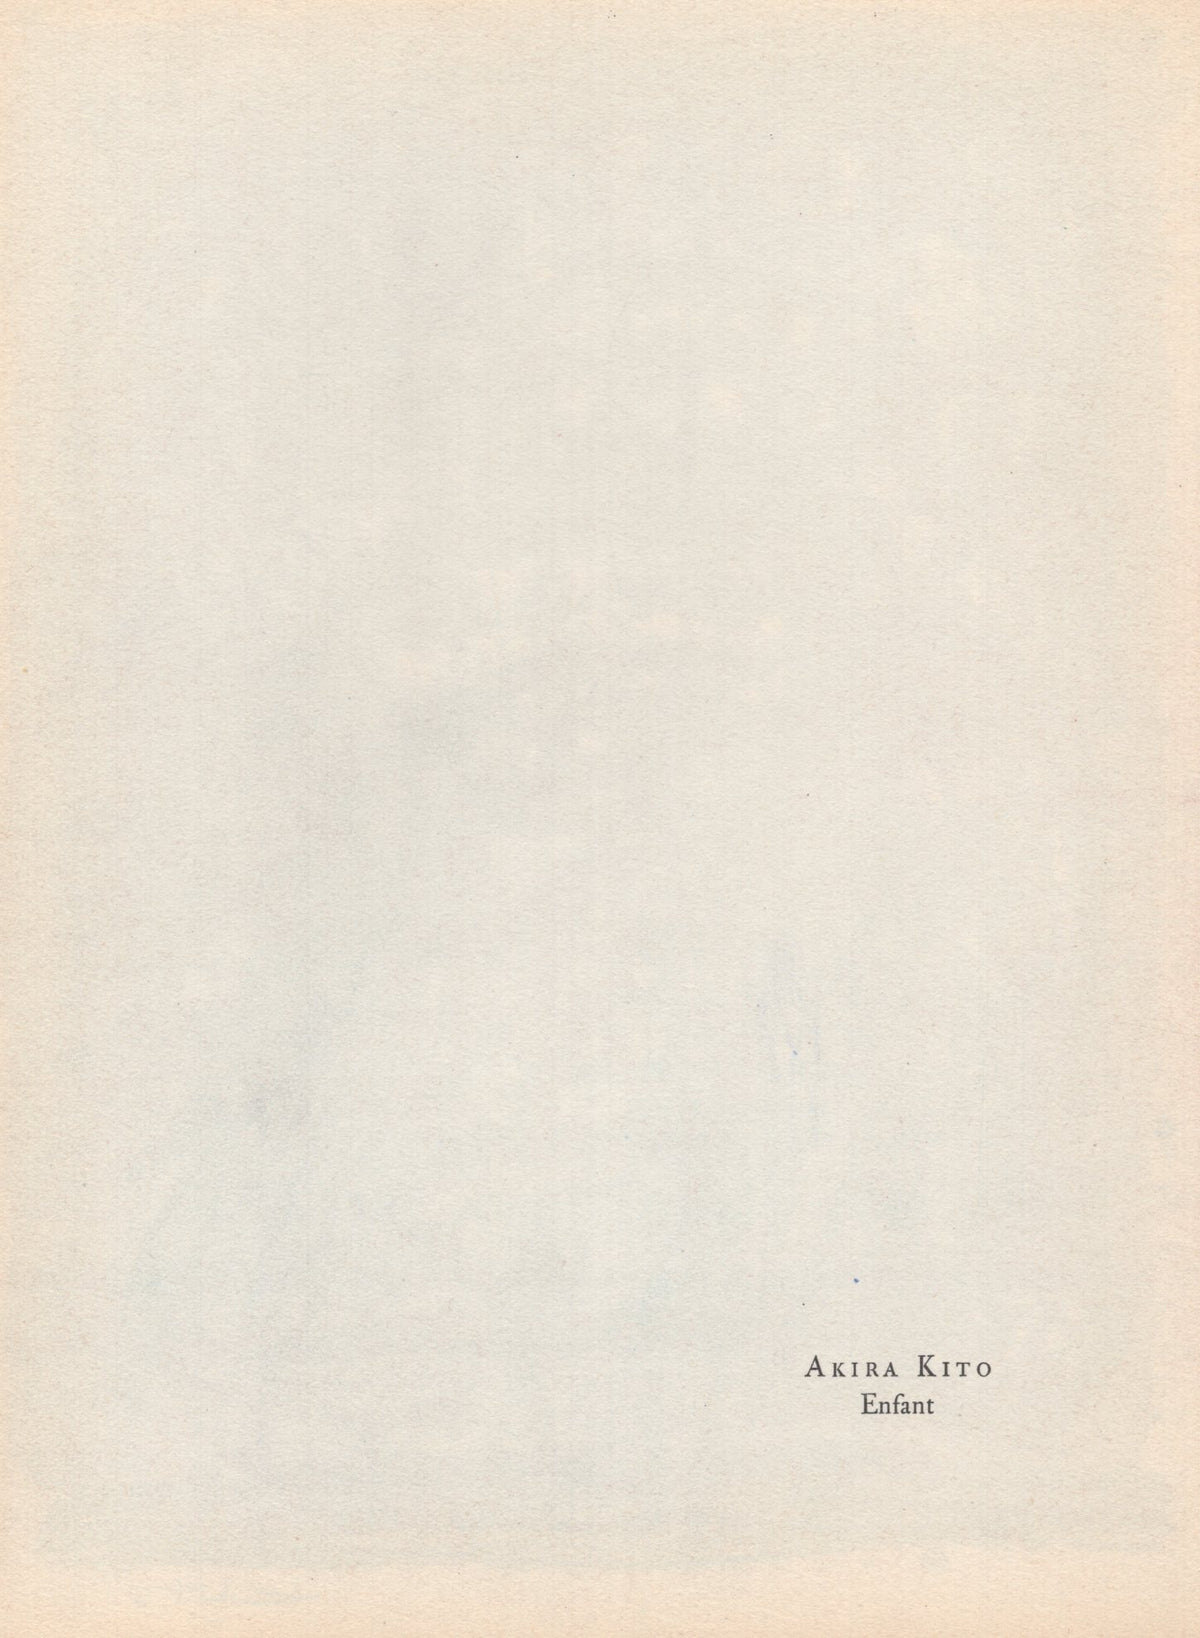 Akria Kito - &quot;Enfant&quot; - Mourlot Press 1964 Lithograph - 7.5 x 10&quot;